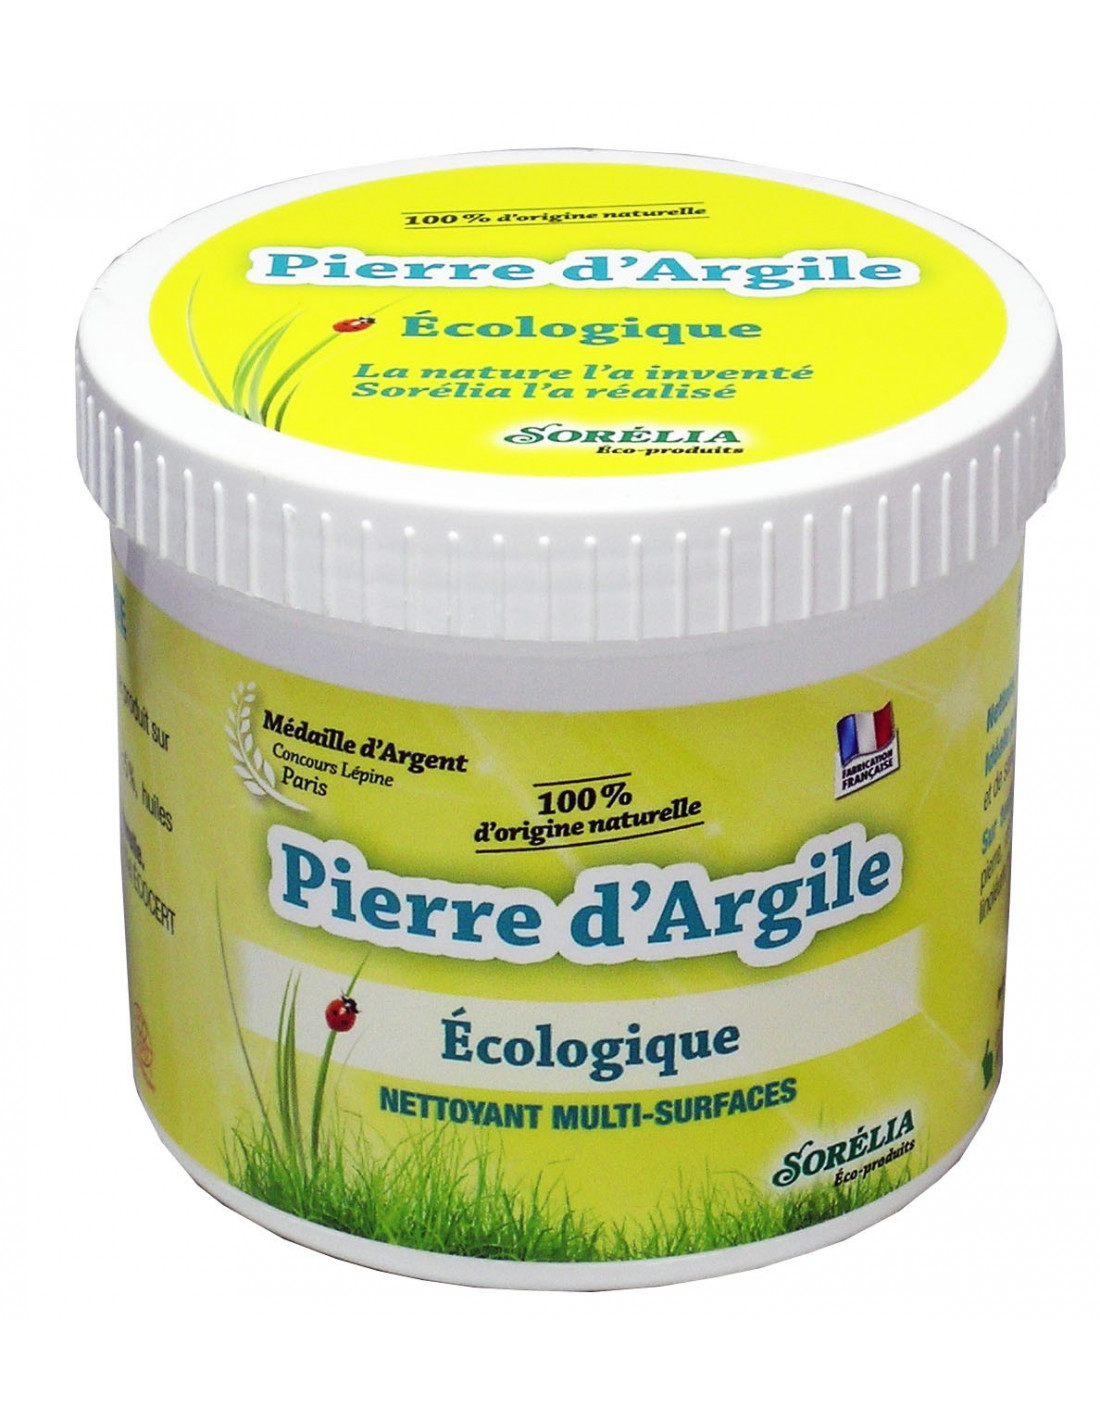 Pierre d'argile blanche HE Citronnelle 100% naturelle - Fabricant